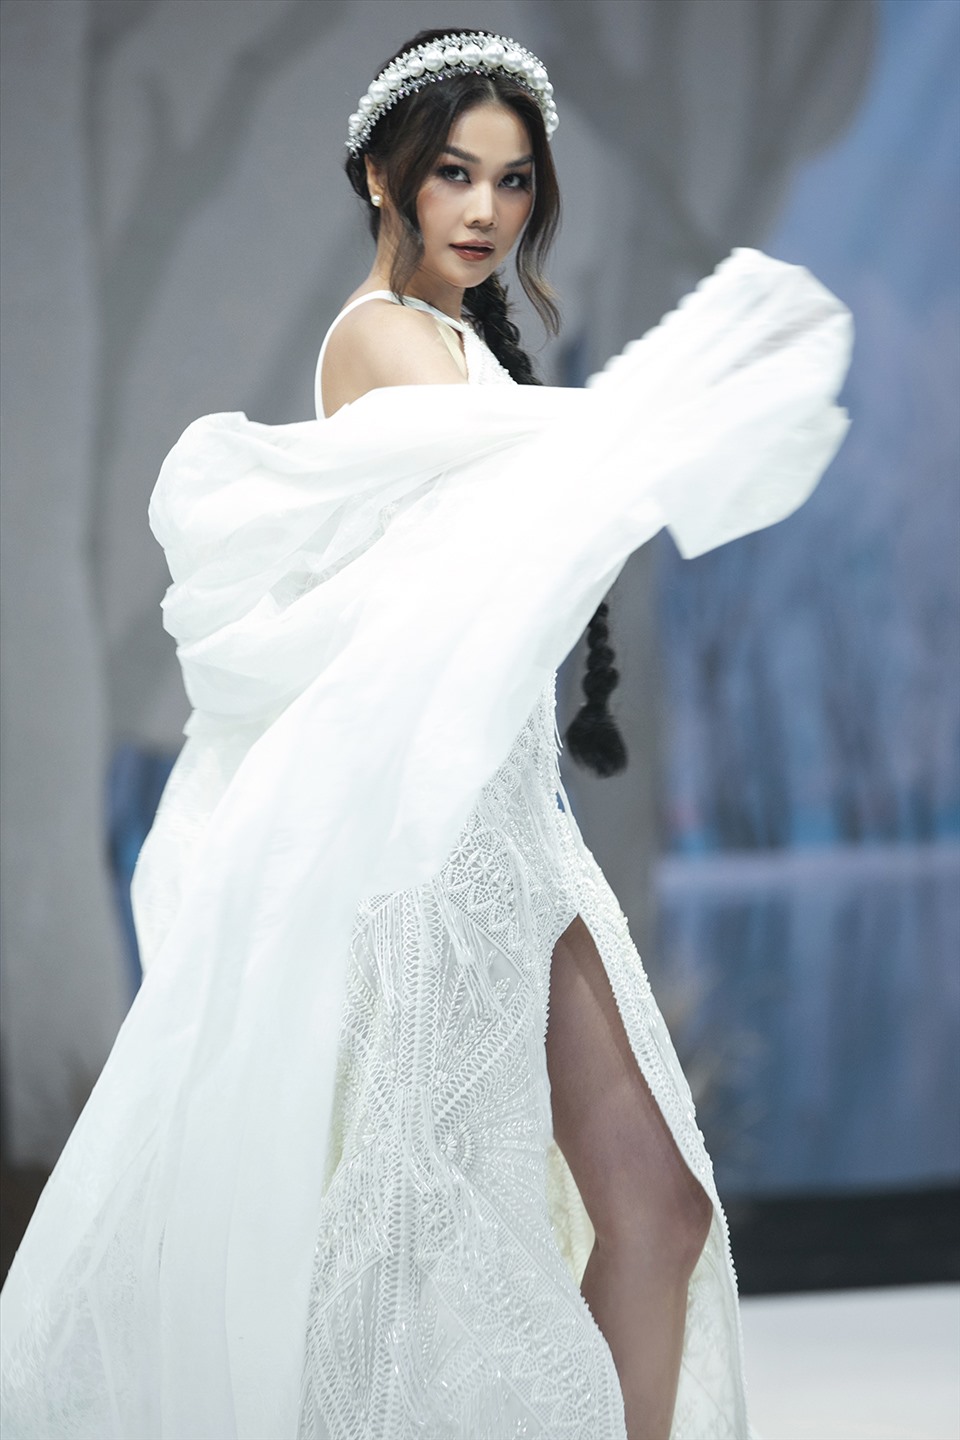 “Chị đại” Thanh Hằng khí chất trong vai trò vedette kết thúc Tuần lễ thời trang Vietnam Runway Fashion Week. Ảnh: BTC.